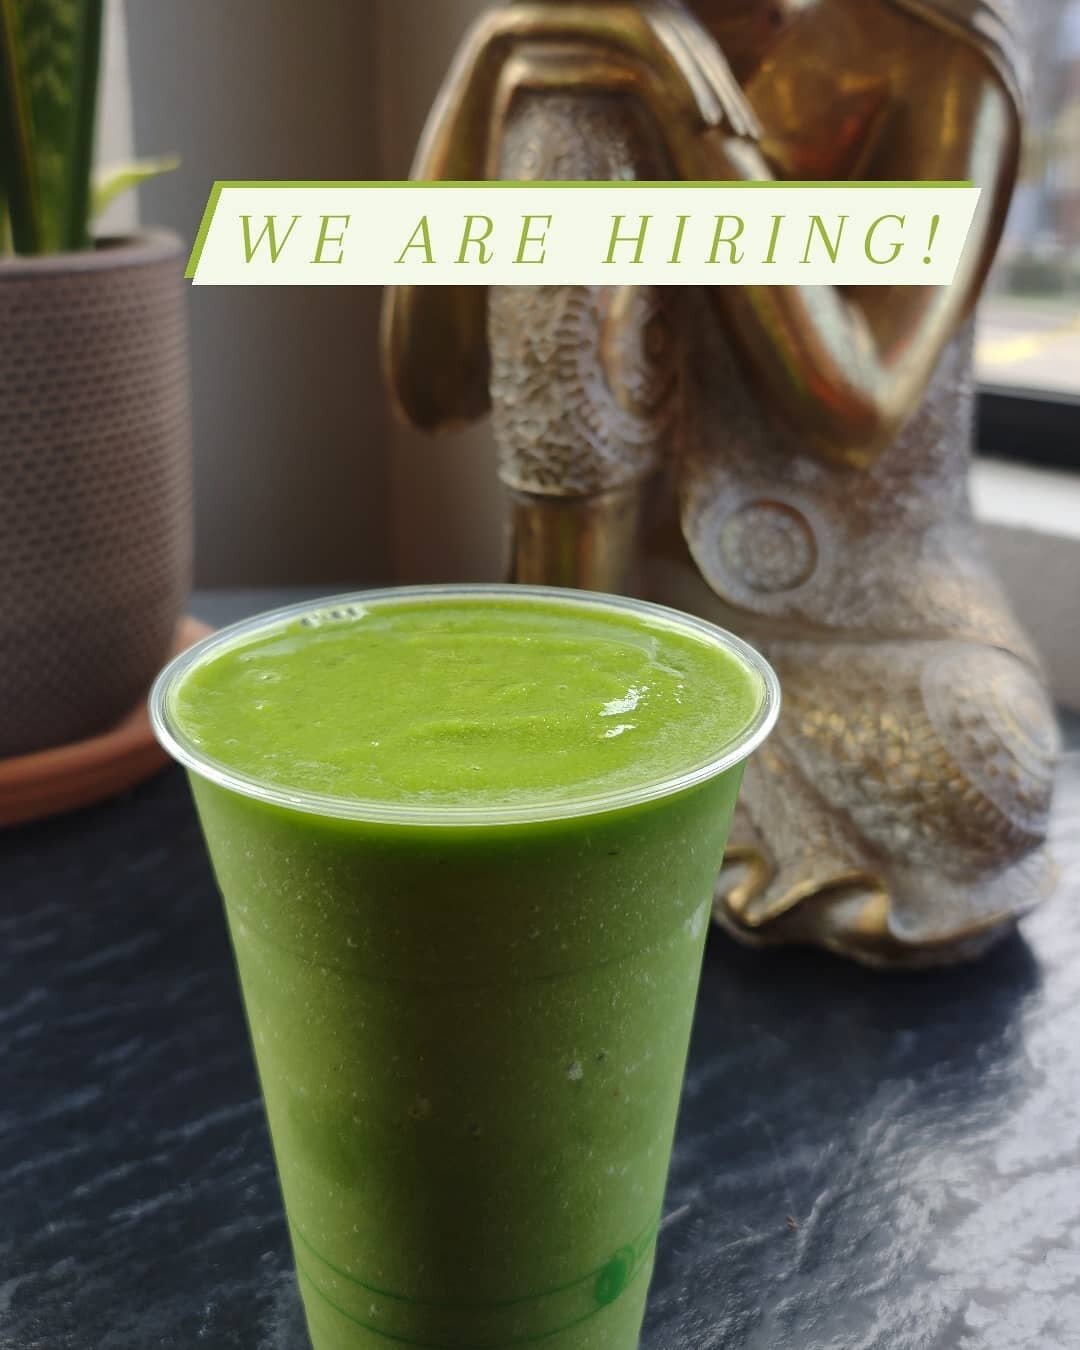 Virt Juice is now hiring!